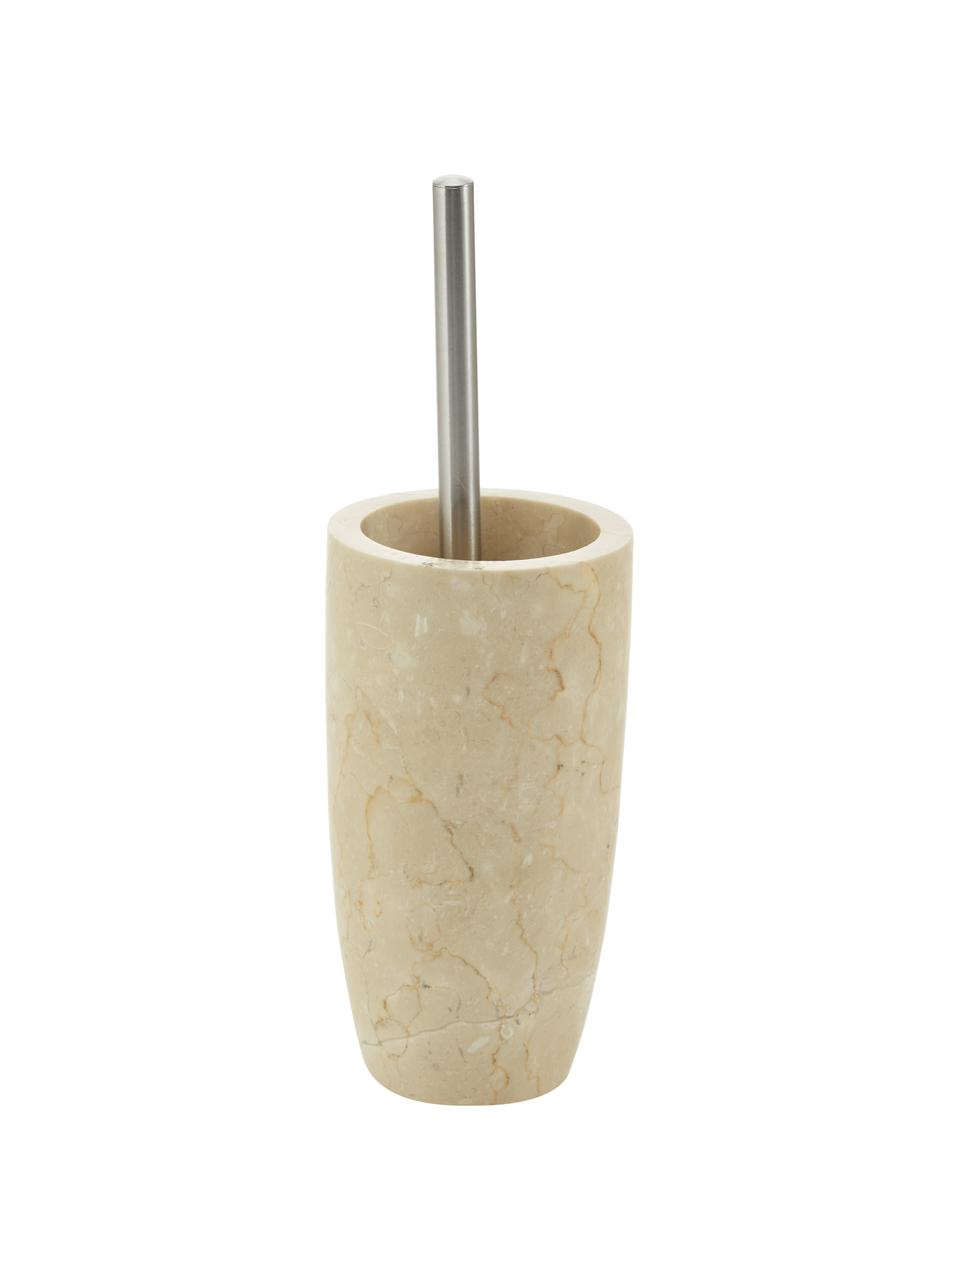 Marmor-Toilettenbürste Luxor, Griff: Rostfreier Stahl, Beige, Stahl, Ø 11 x H 36 cm